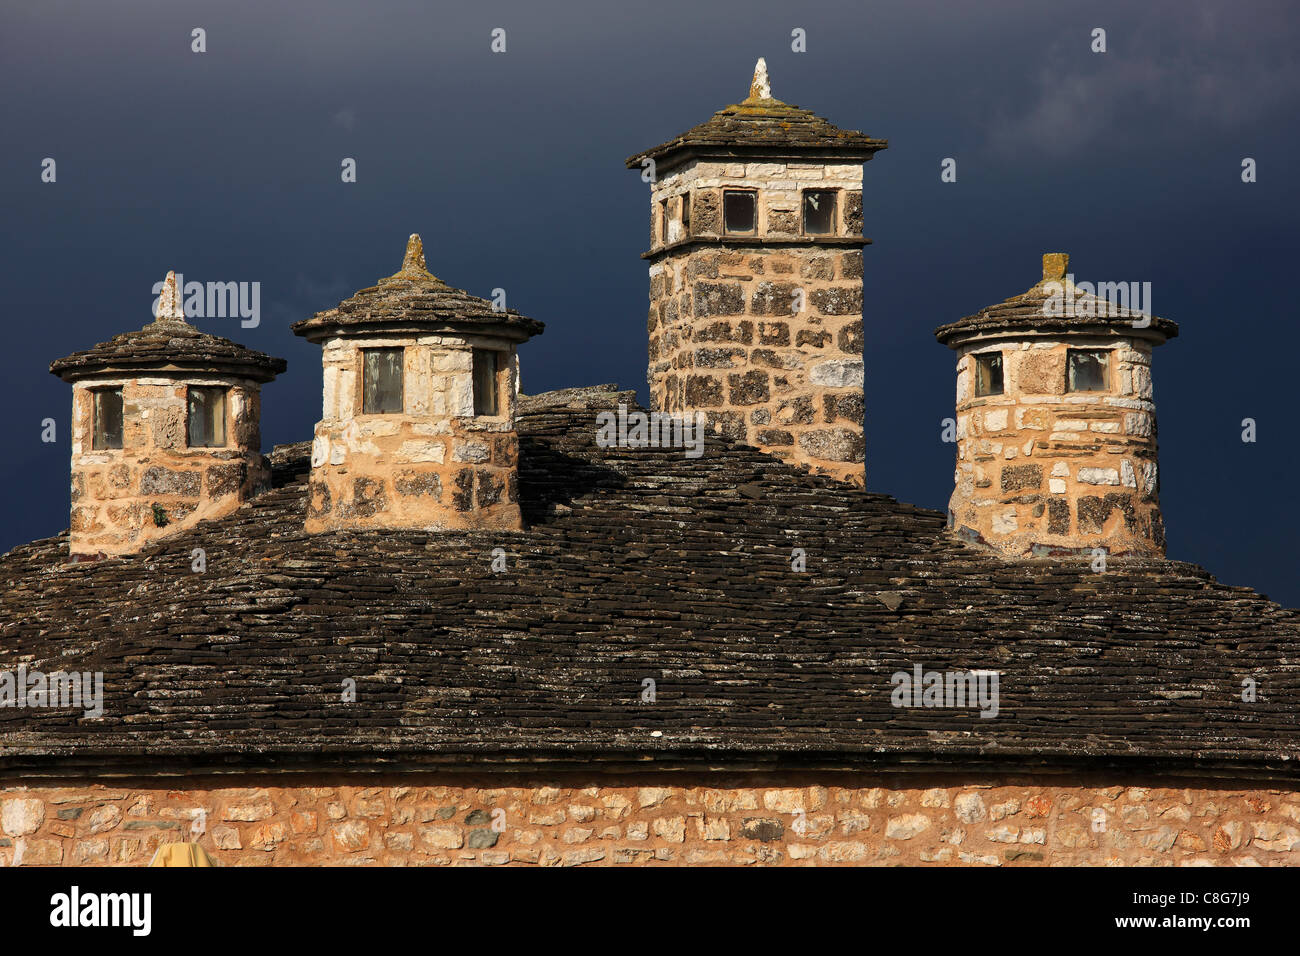 Die Schornsteine der alten Garküche am Ic Kale ("innere Burg"), die Zitadelle von Ioannina, einmal Palast von Ali Pascha. Epirus, Griechenland. Stockfoto